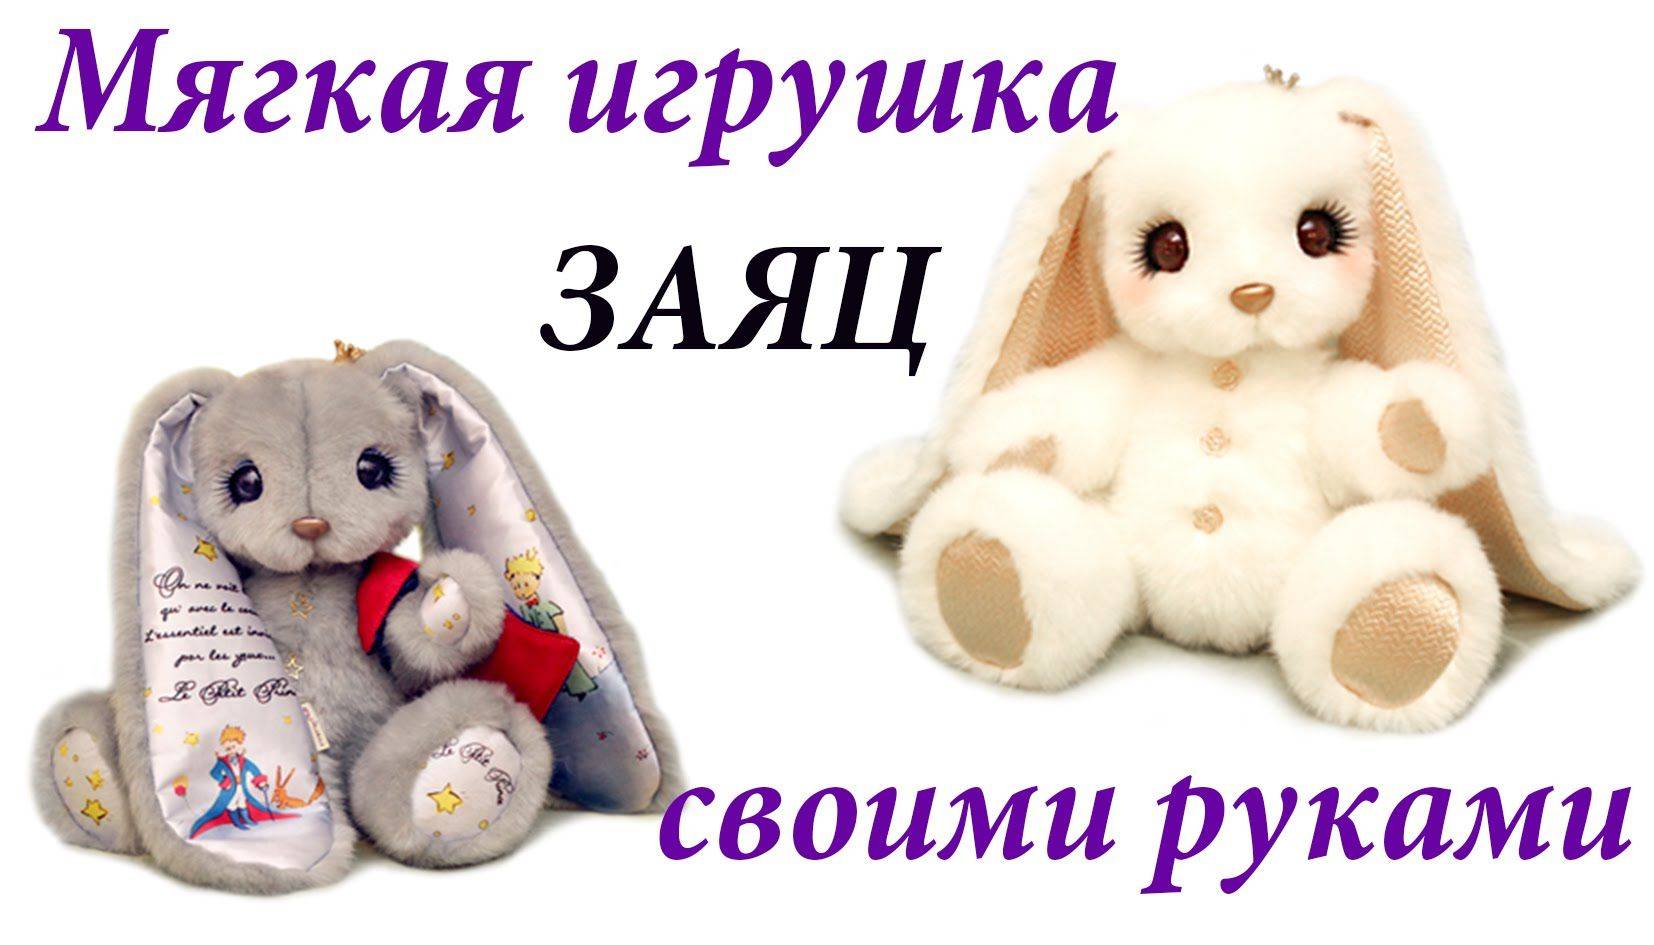 Мягкая игрушка кролик своими руками. выкройка зайца с длинными ушами в разных вариациях с подробным и понятным мастер – классом, имеющим подробности даже в технике тедди